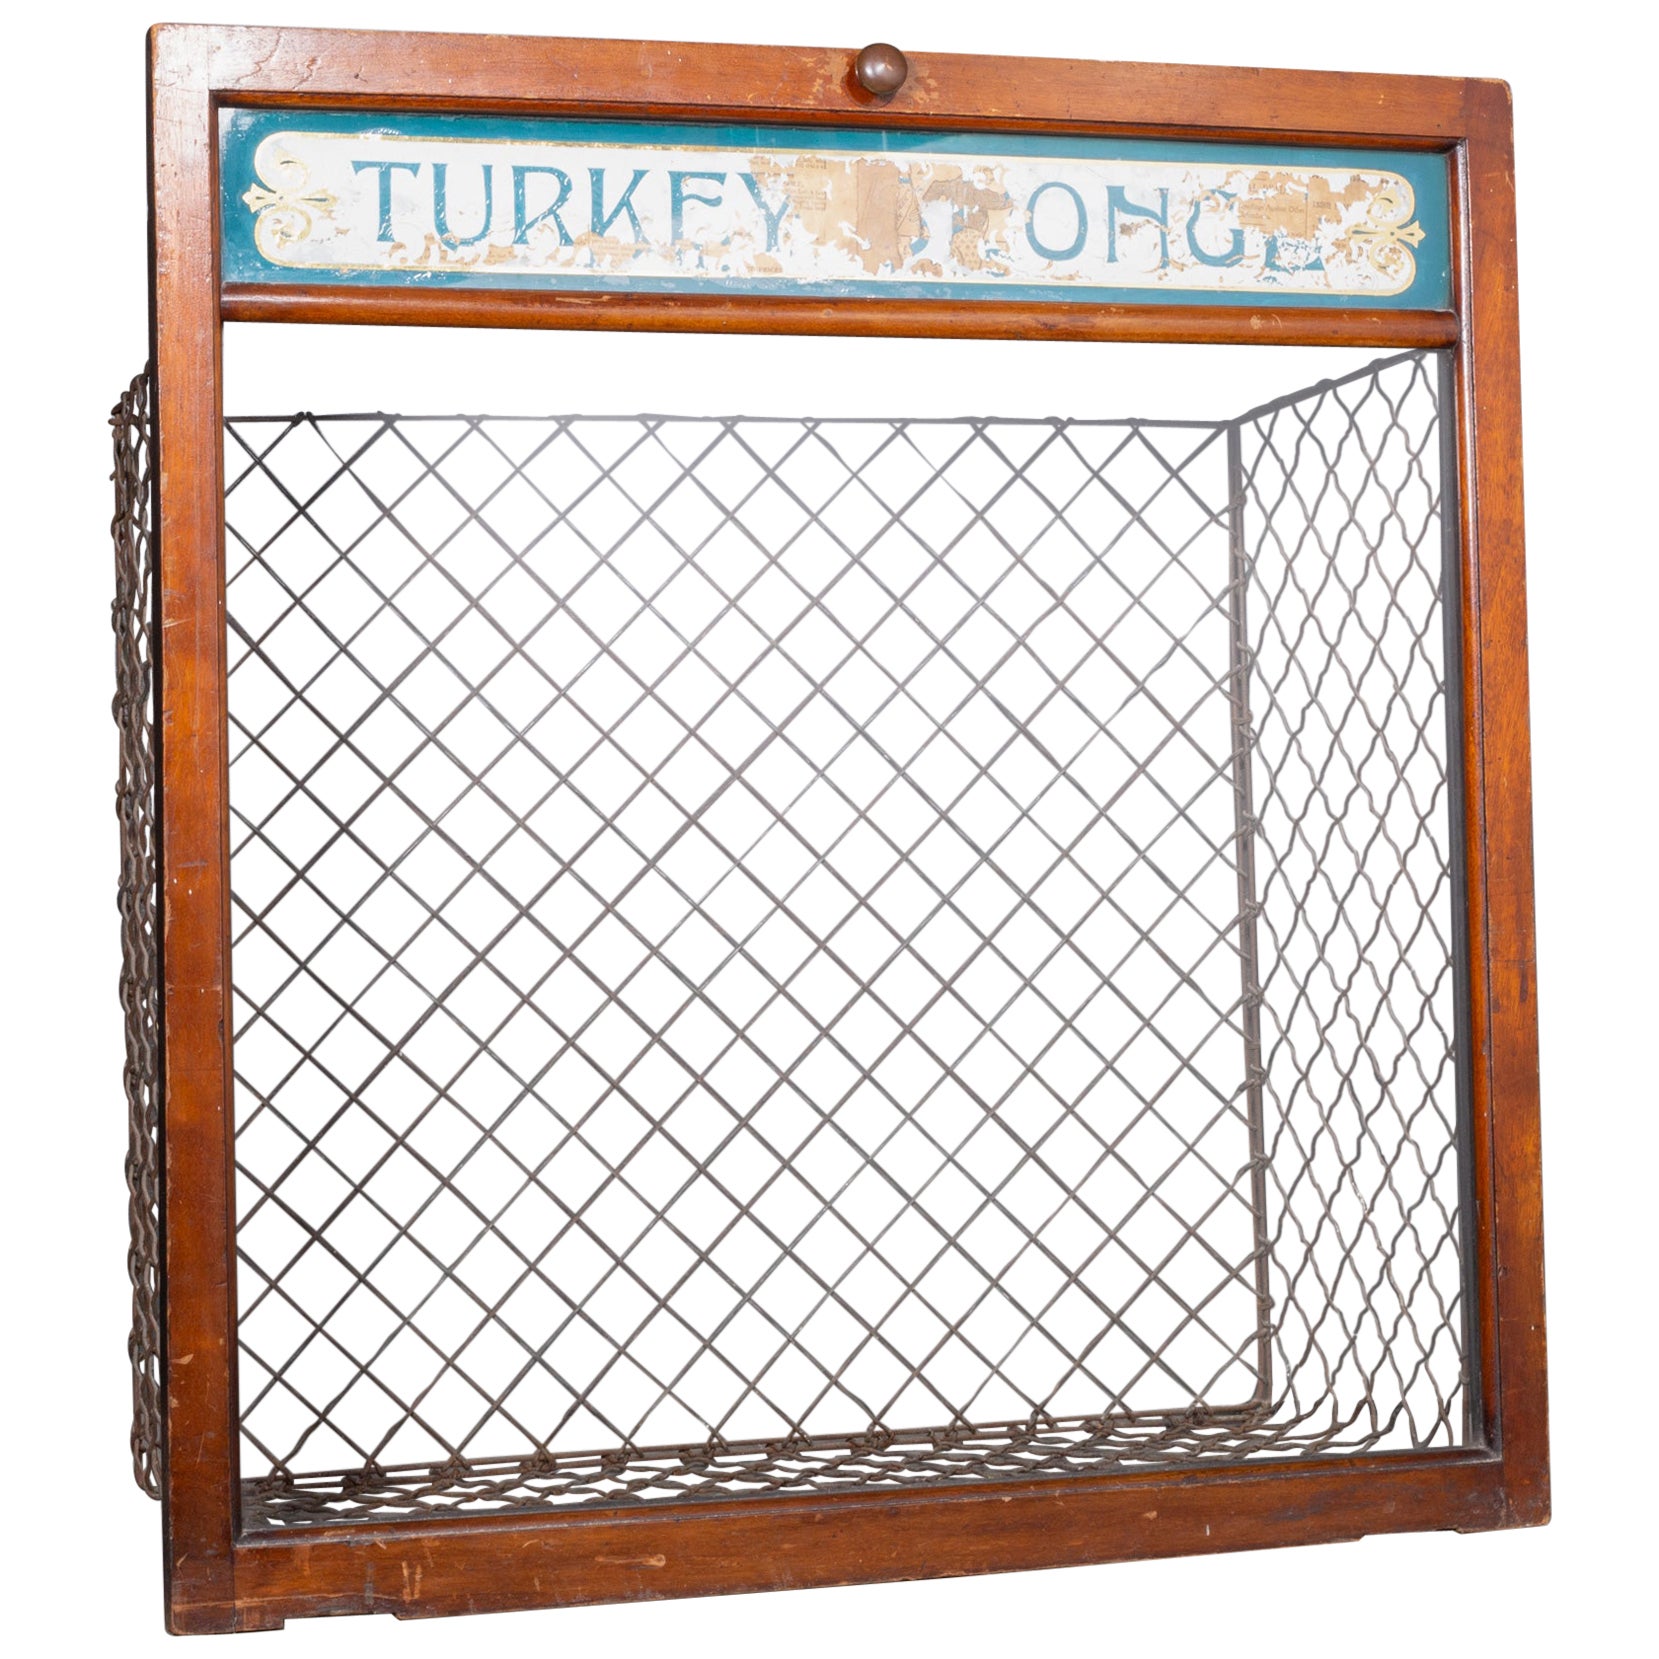 Early 20th c. "Turkey Sponge" Chemist Bin c.1900-1940 For Sale